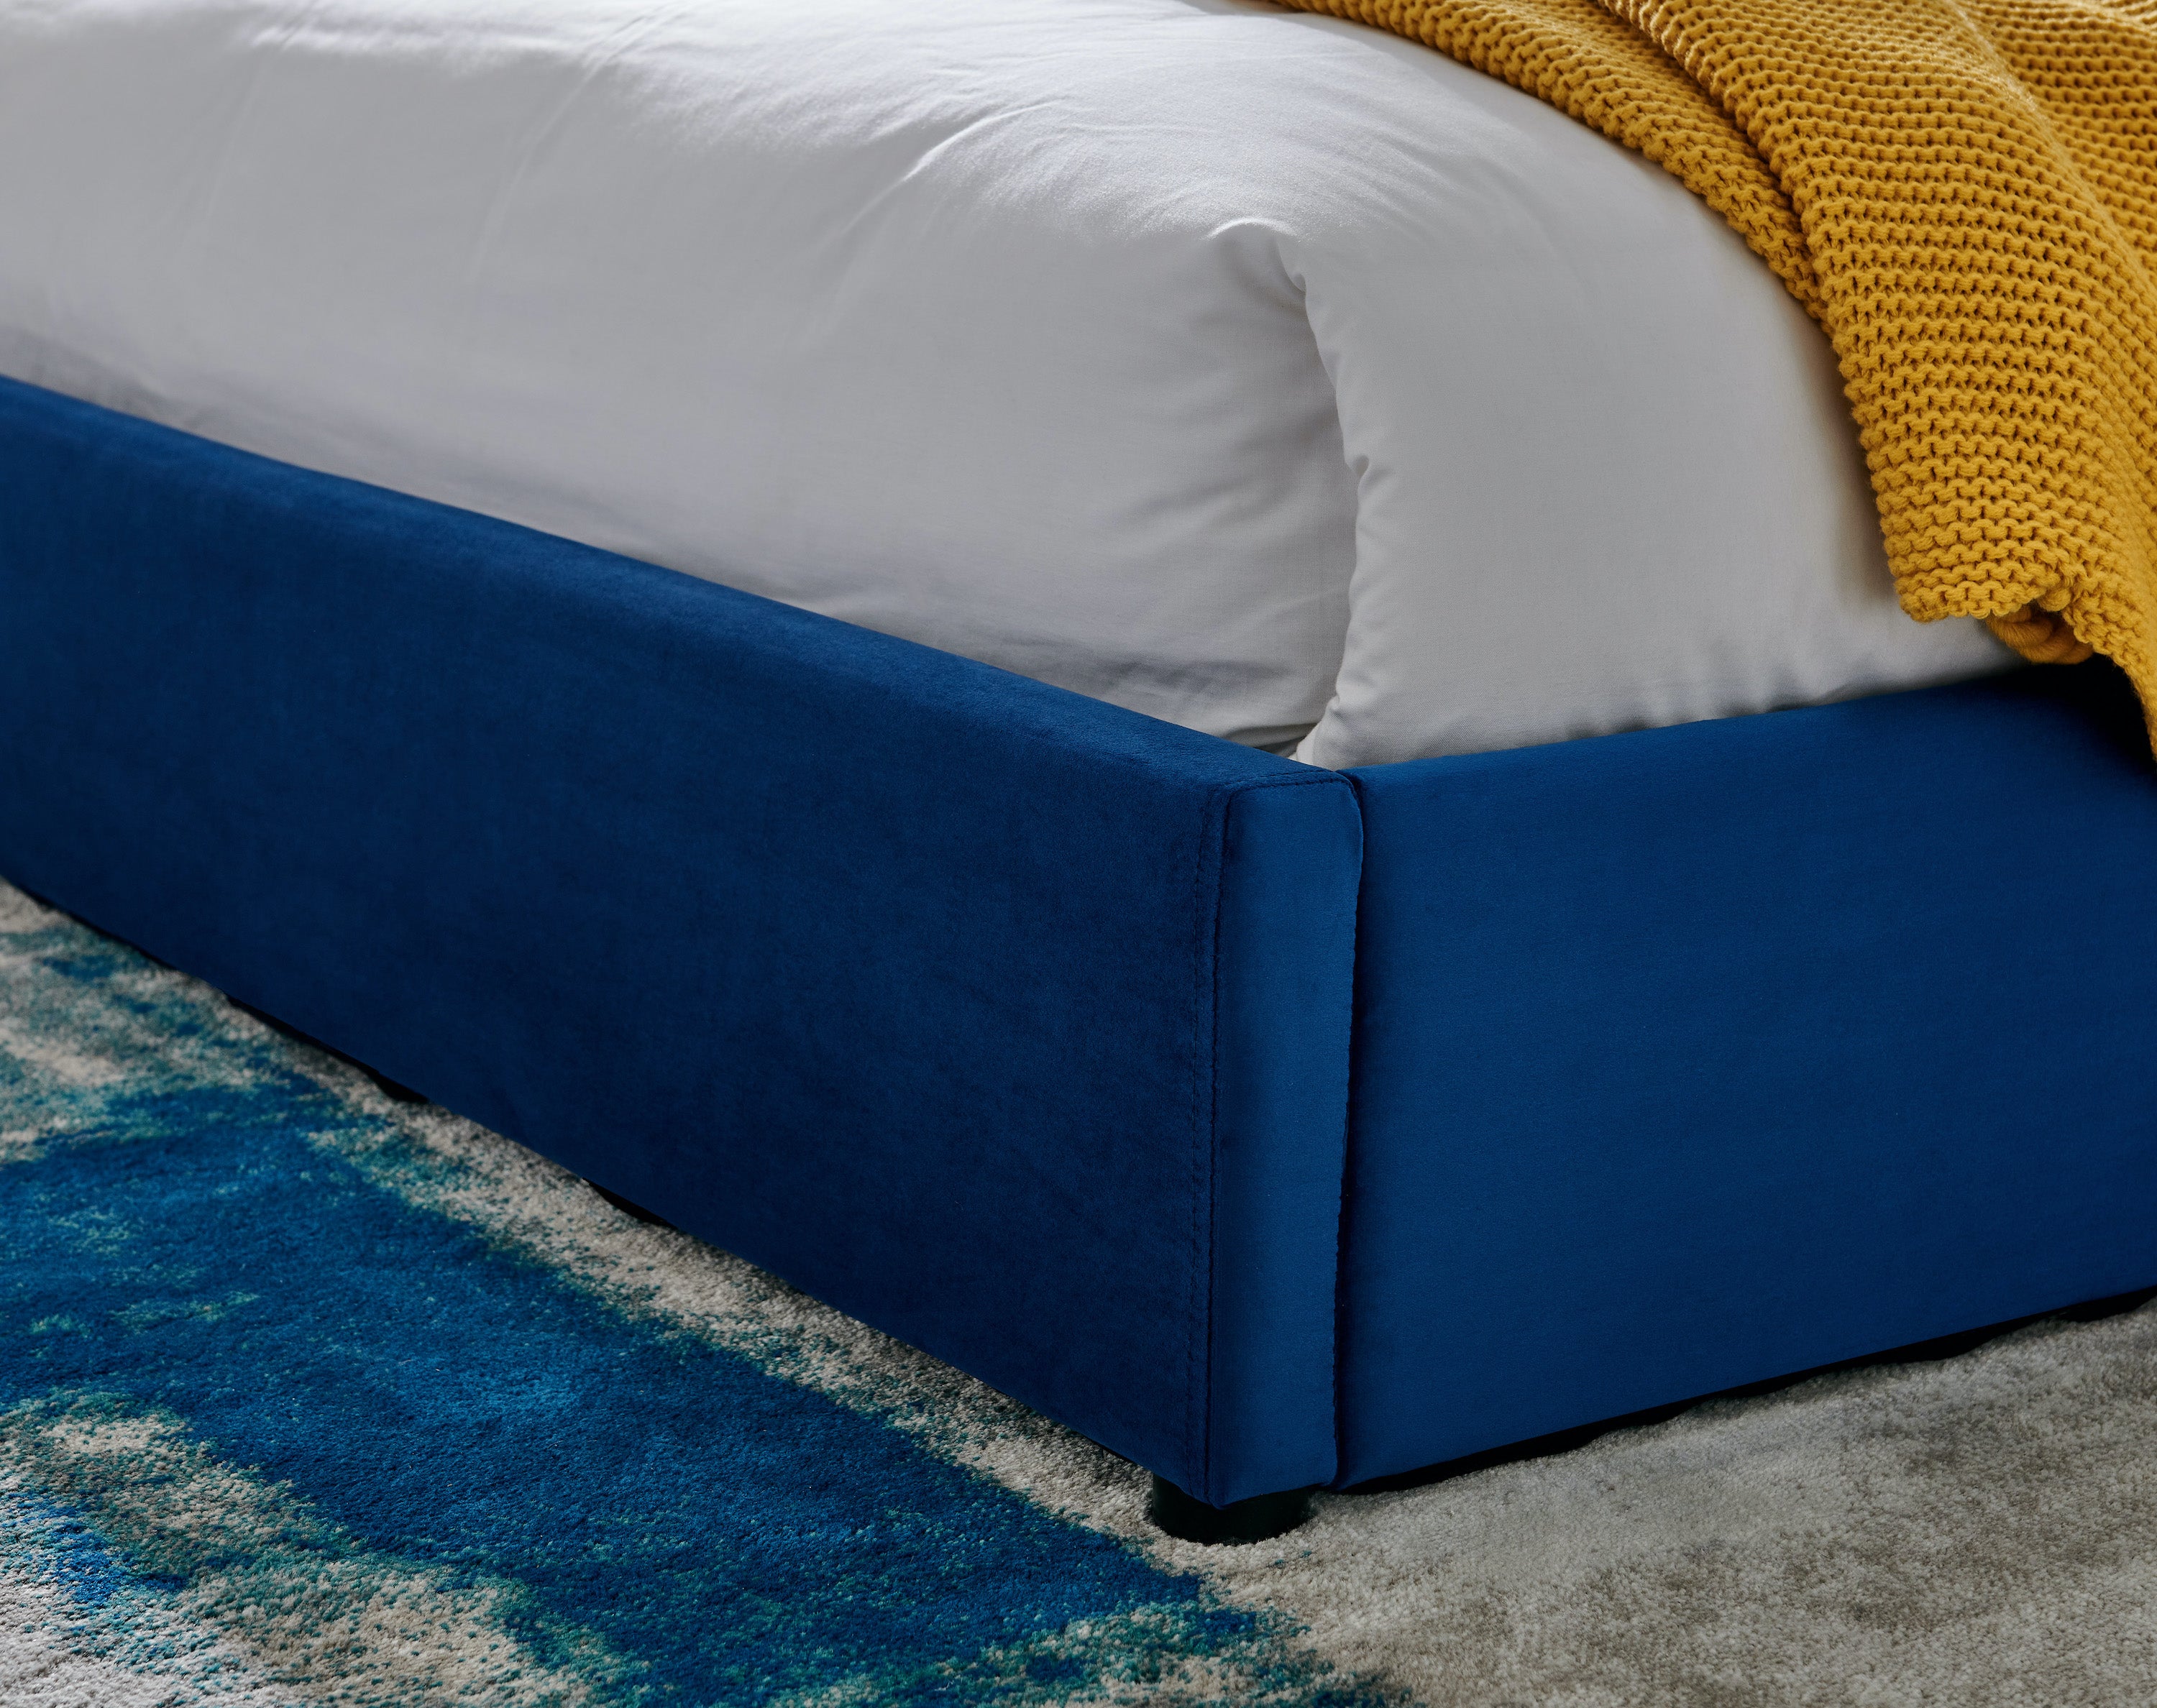 Blue Velvet Plush Ottoman Storage Bed Frame - Double / King / Super King